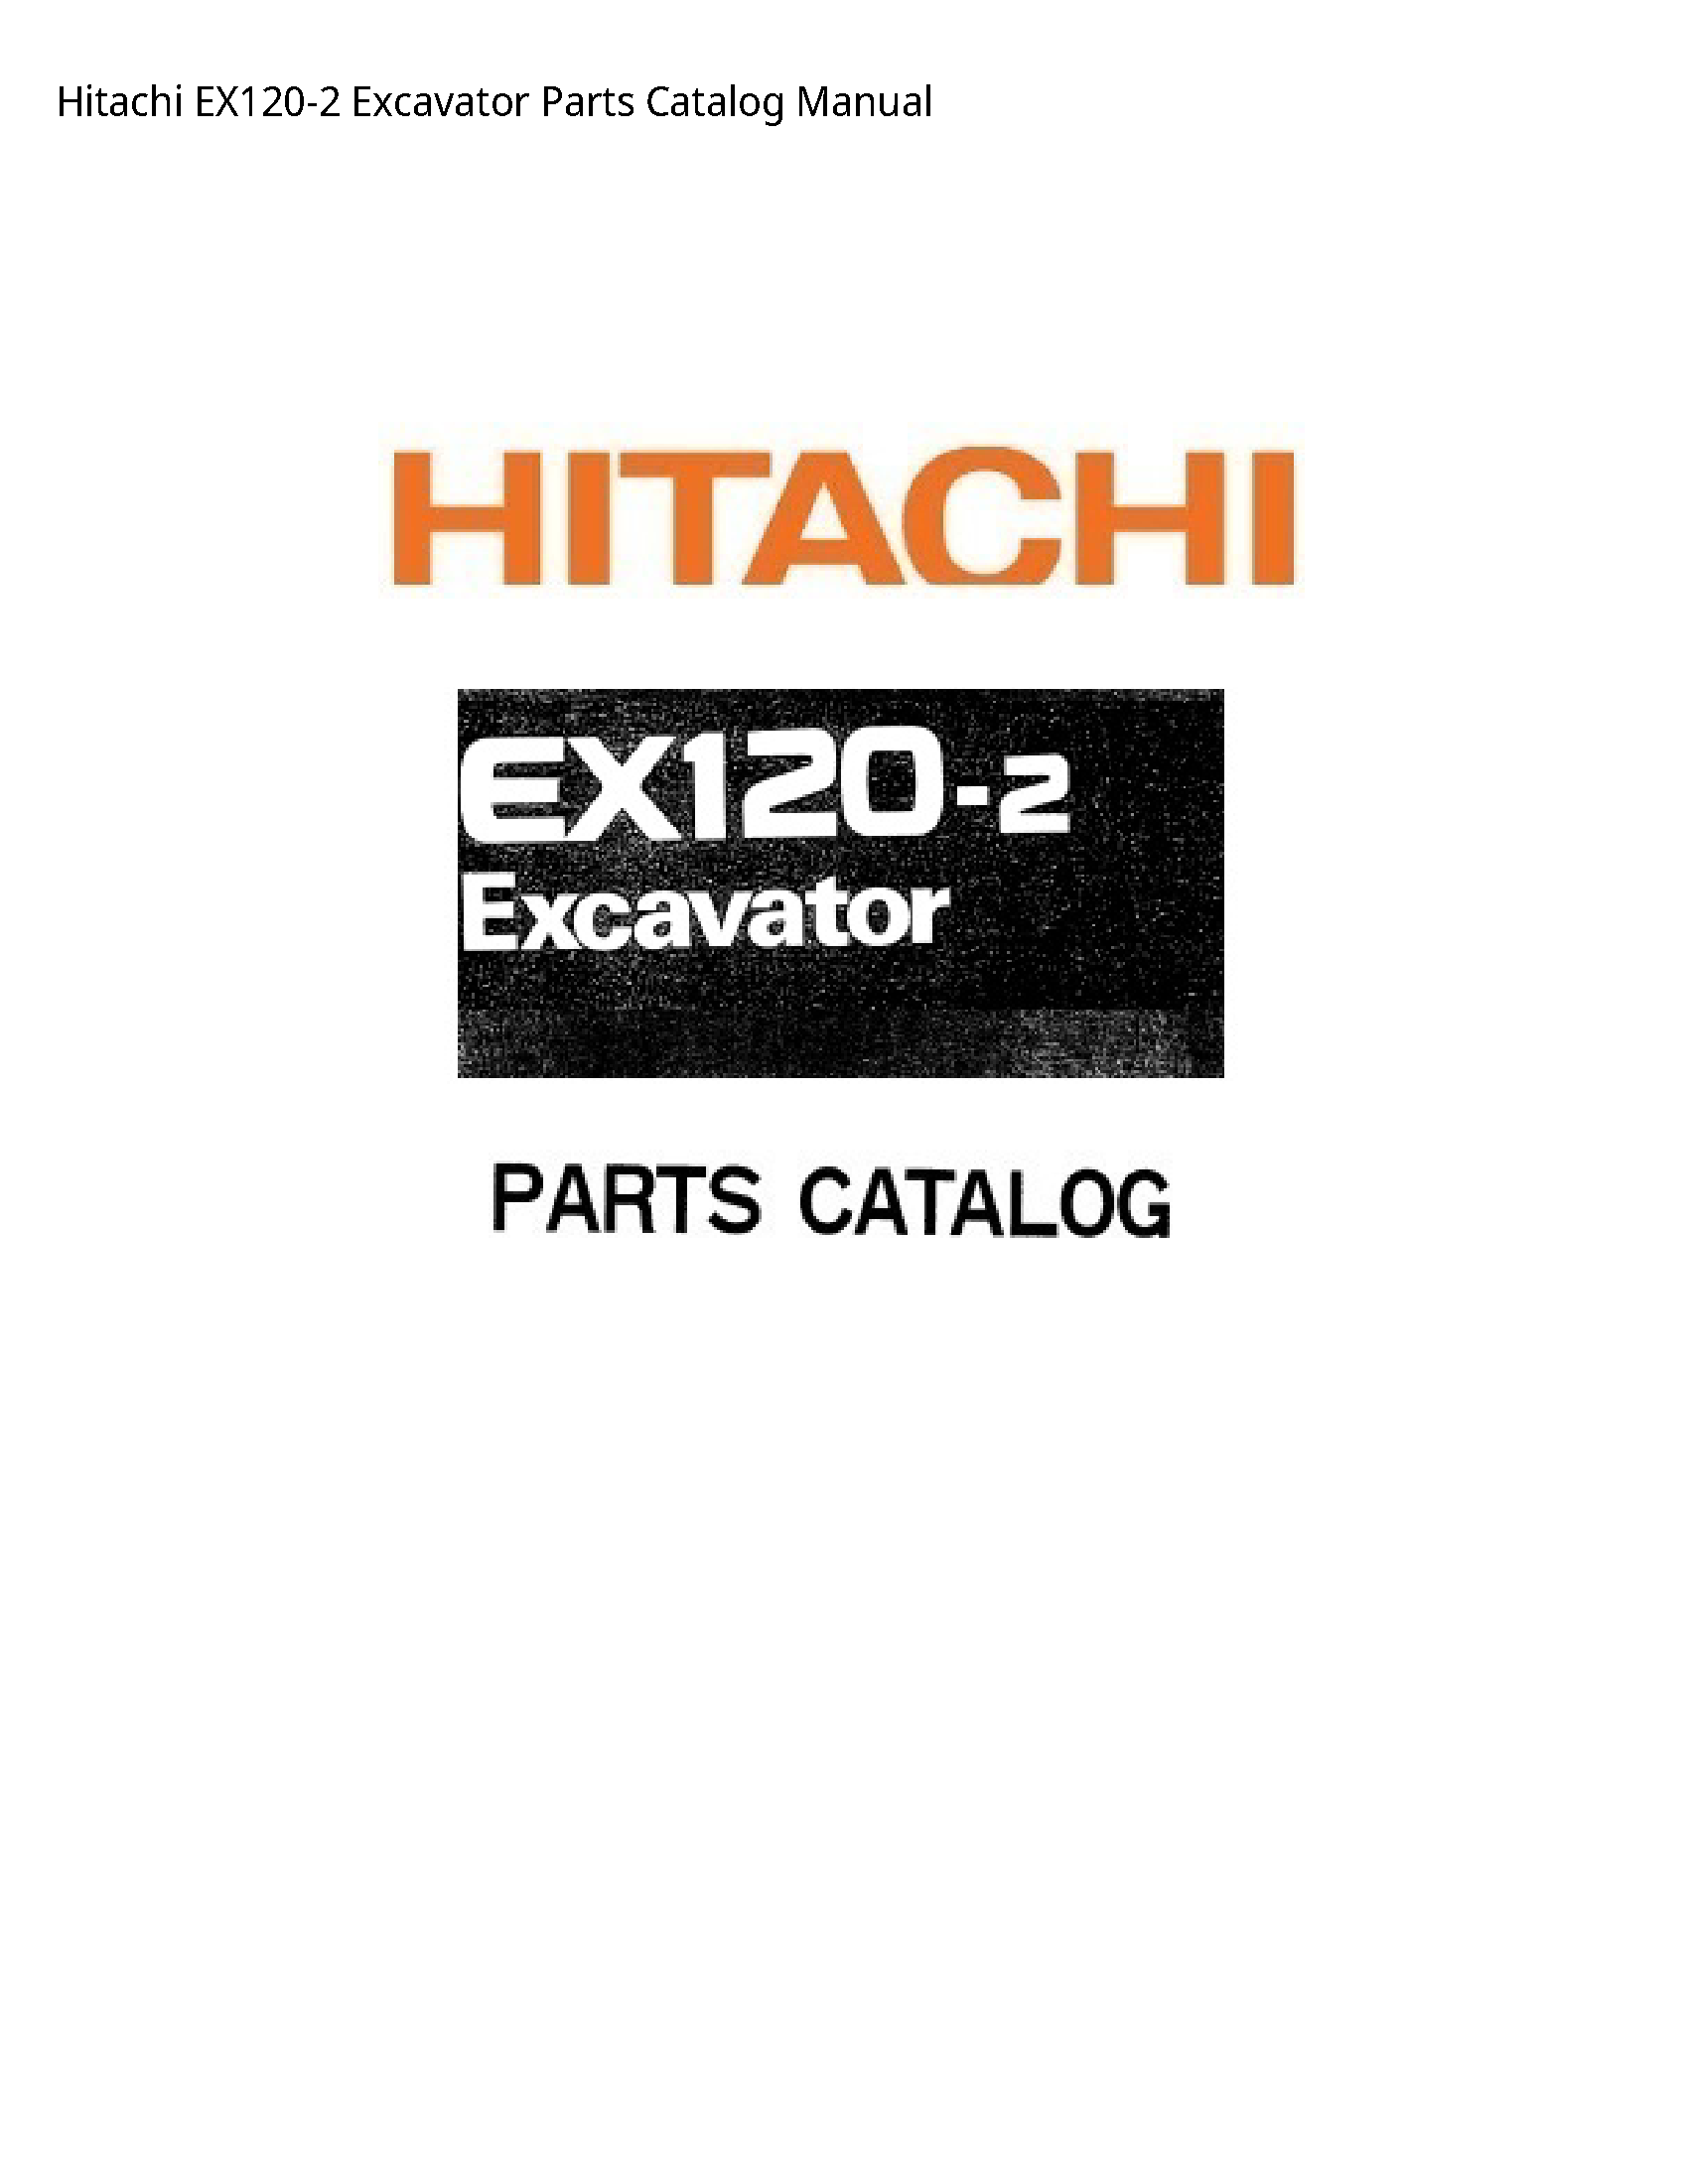 Hitachi EX120-2 Excavator Parts Catalog manual